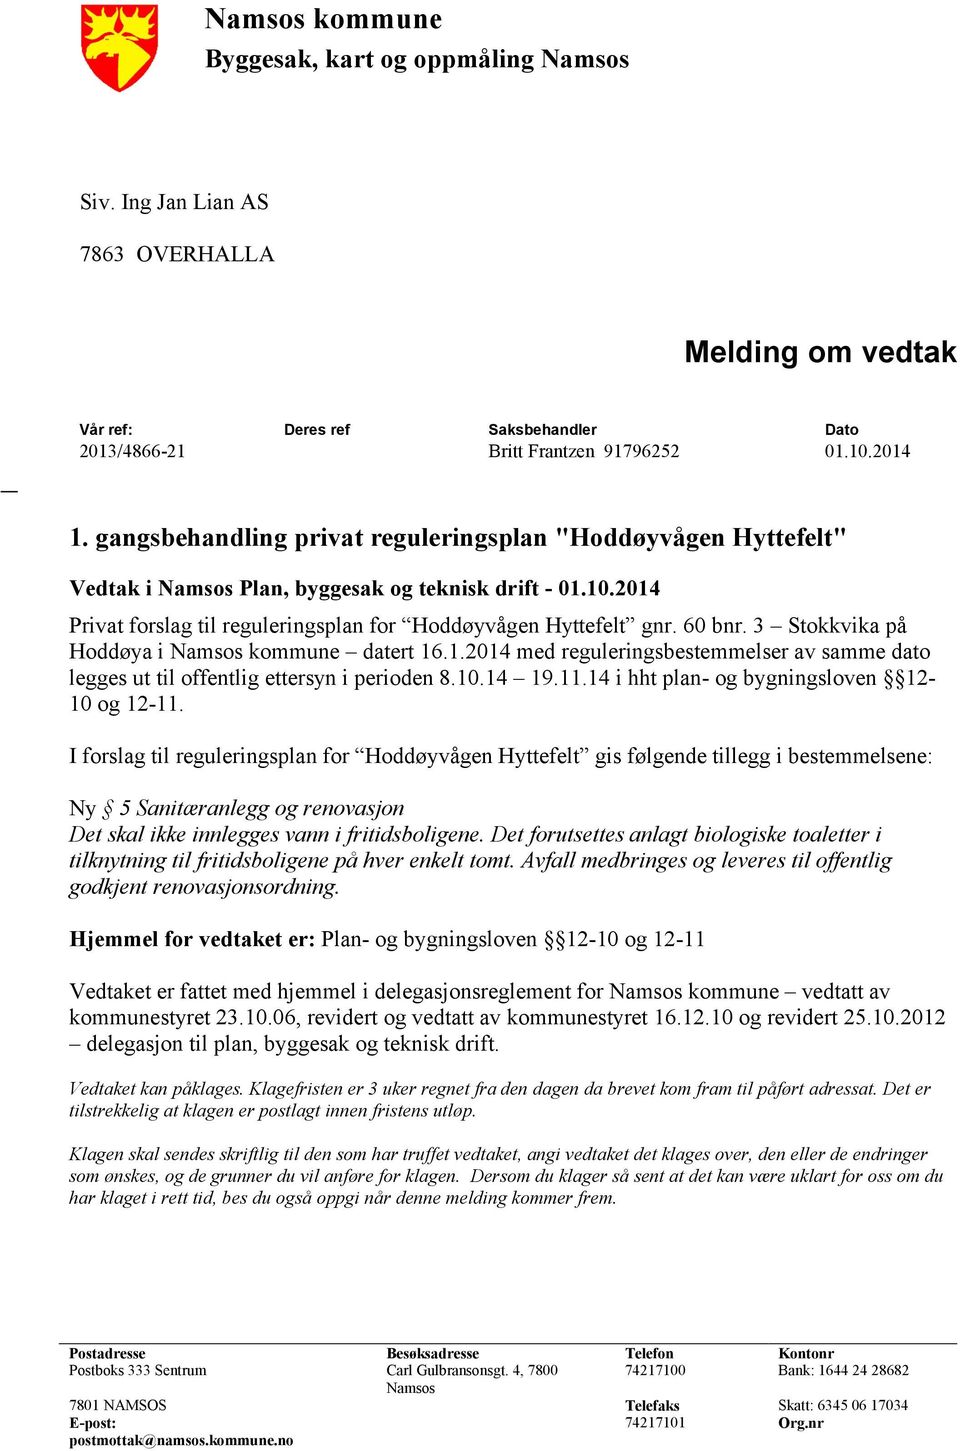 3 Stokkvika på Hoddøya i Namsos kommune datert 16.1.2014 med reguleringsbestemmelser av samme dato legges ut til offentlig ettersyn i perioden 8.10.14 19.11.